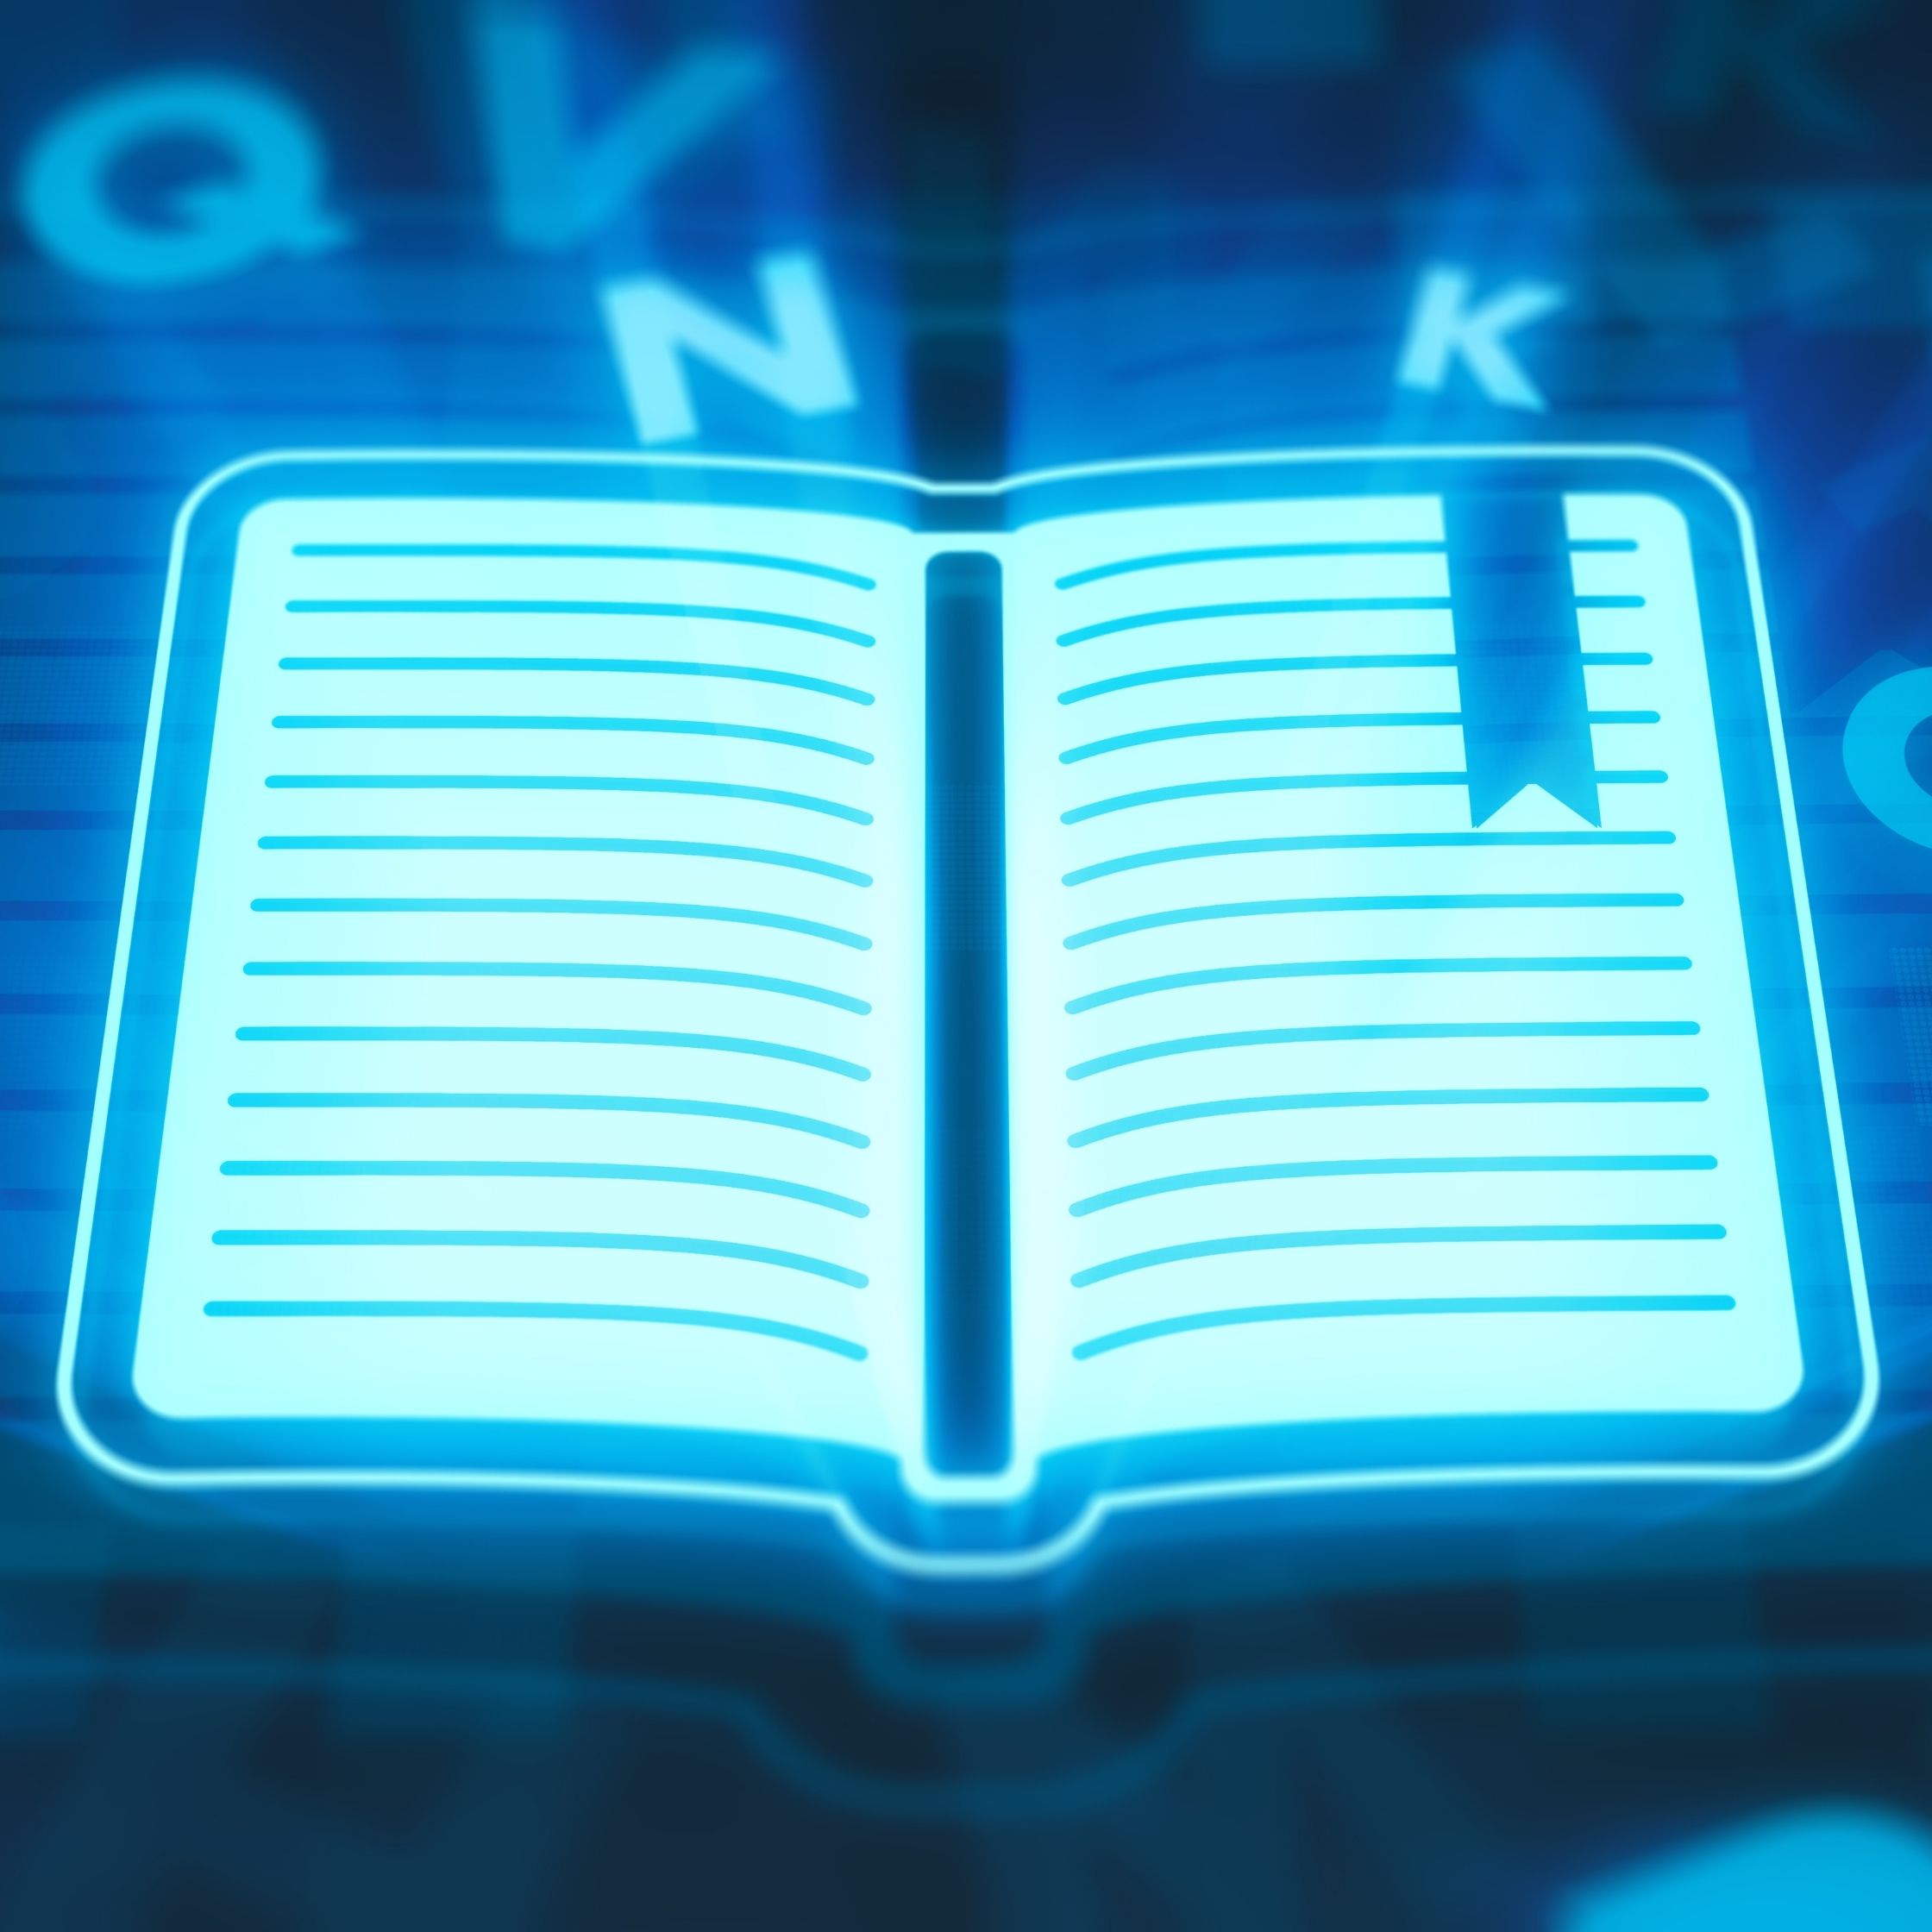 grafika przedstawiająca otwartą cyfrową księgę jaskrawo niebieskiego koloru